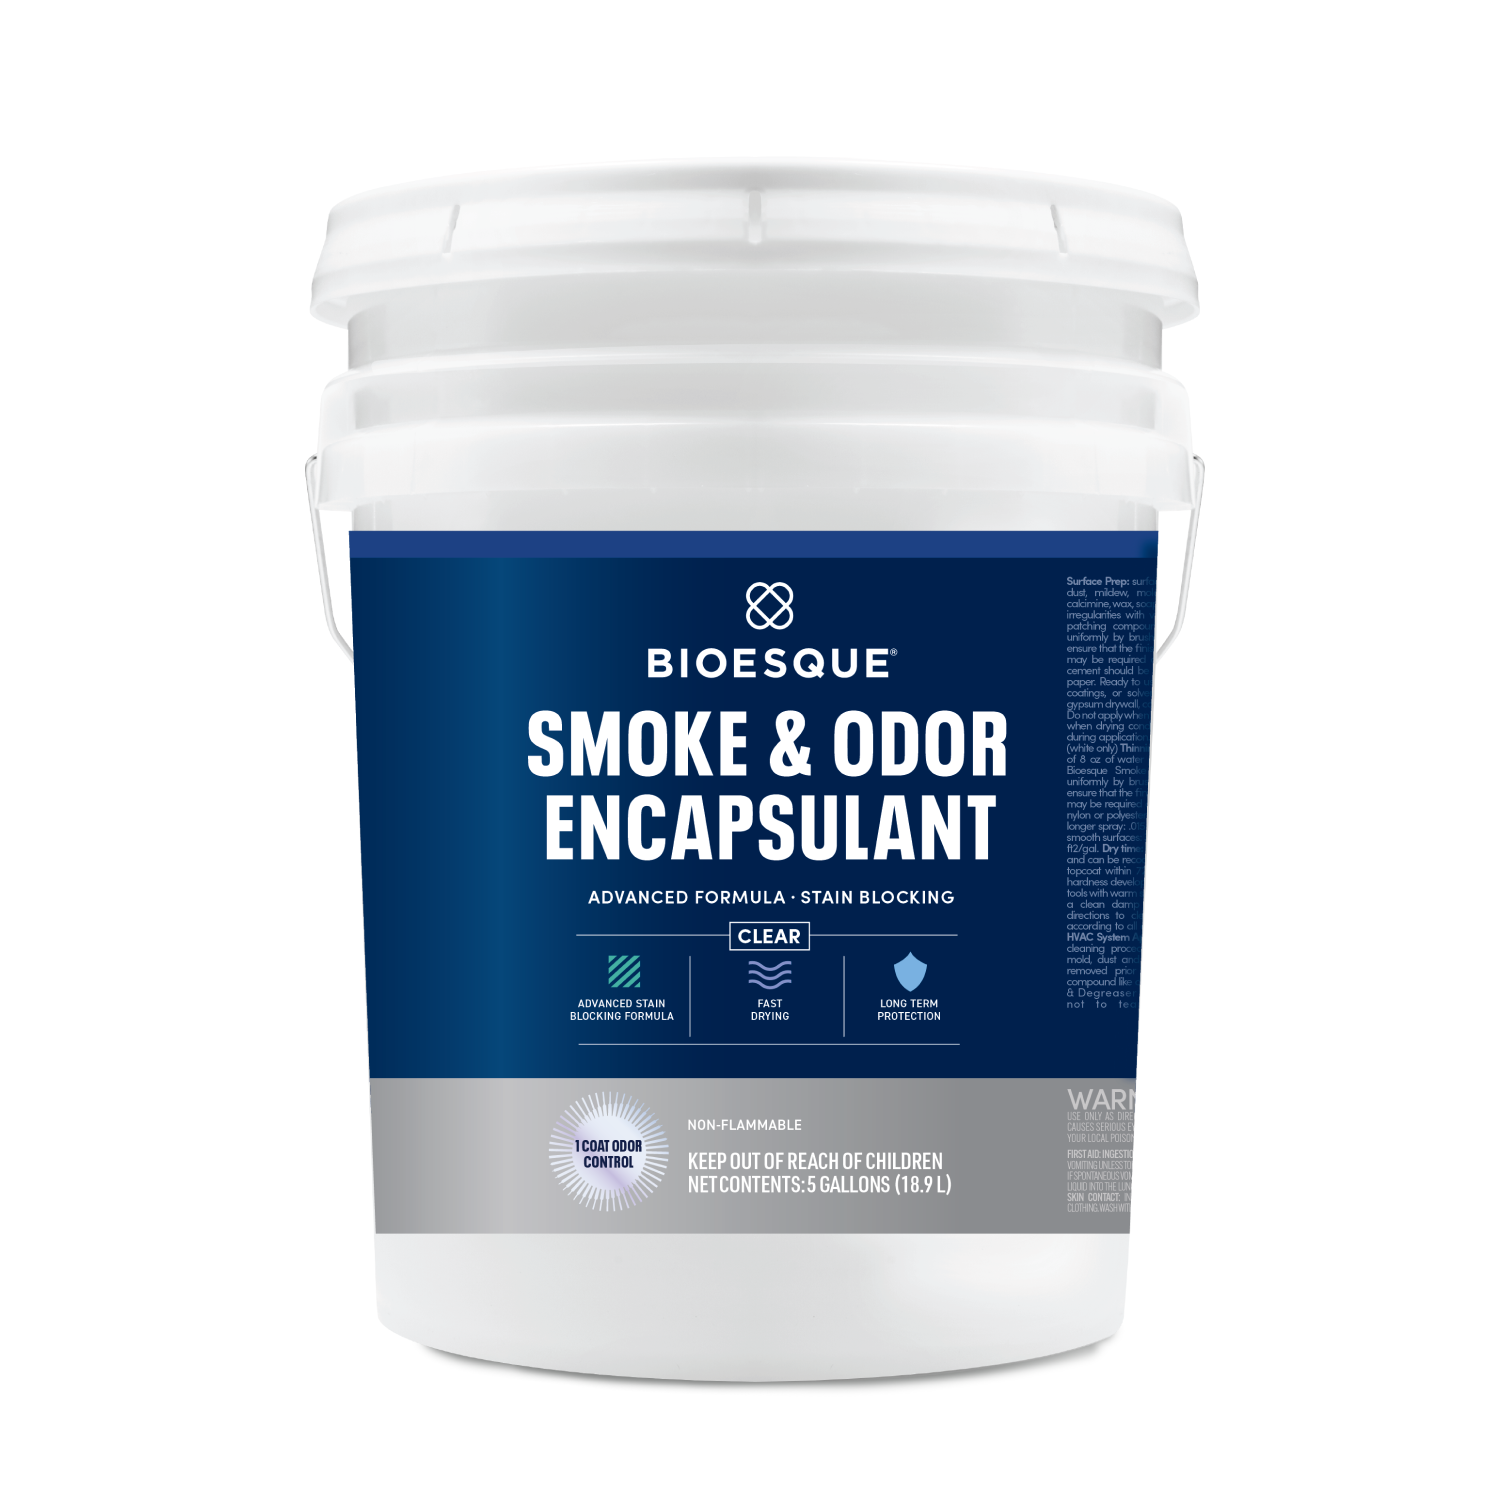 Bioesque Smoke & Odor Encapsulant Clear 5 gallons